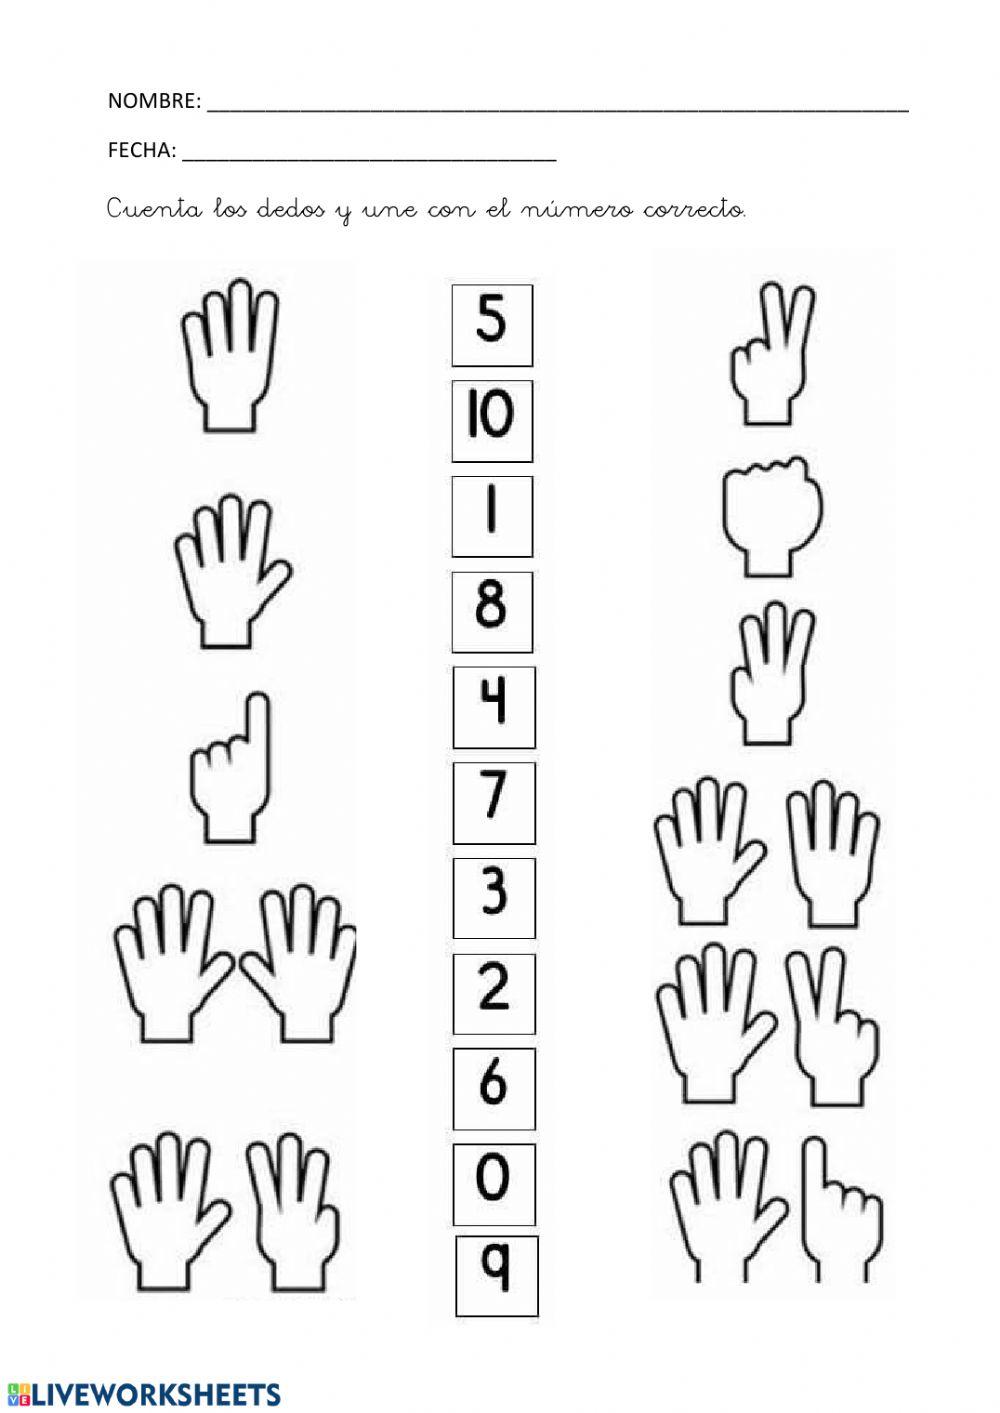 Une os dedos con el número correcto